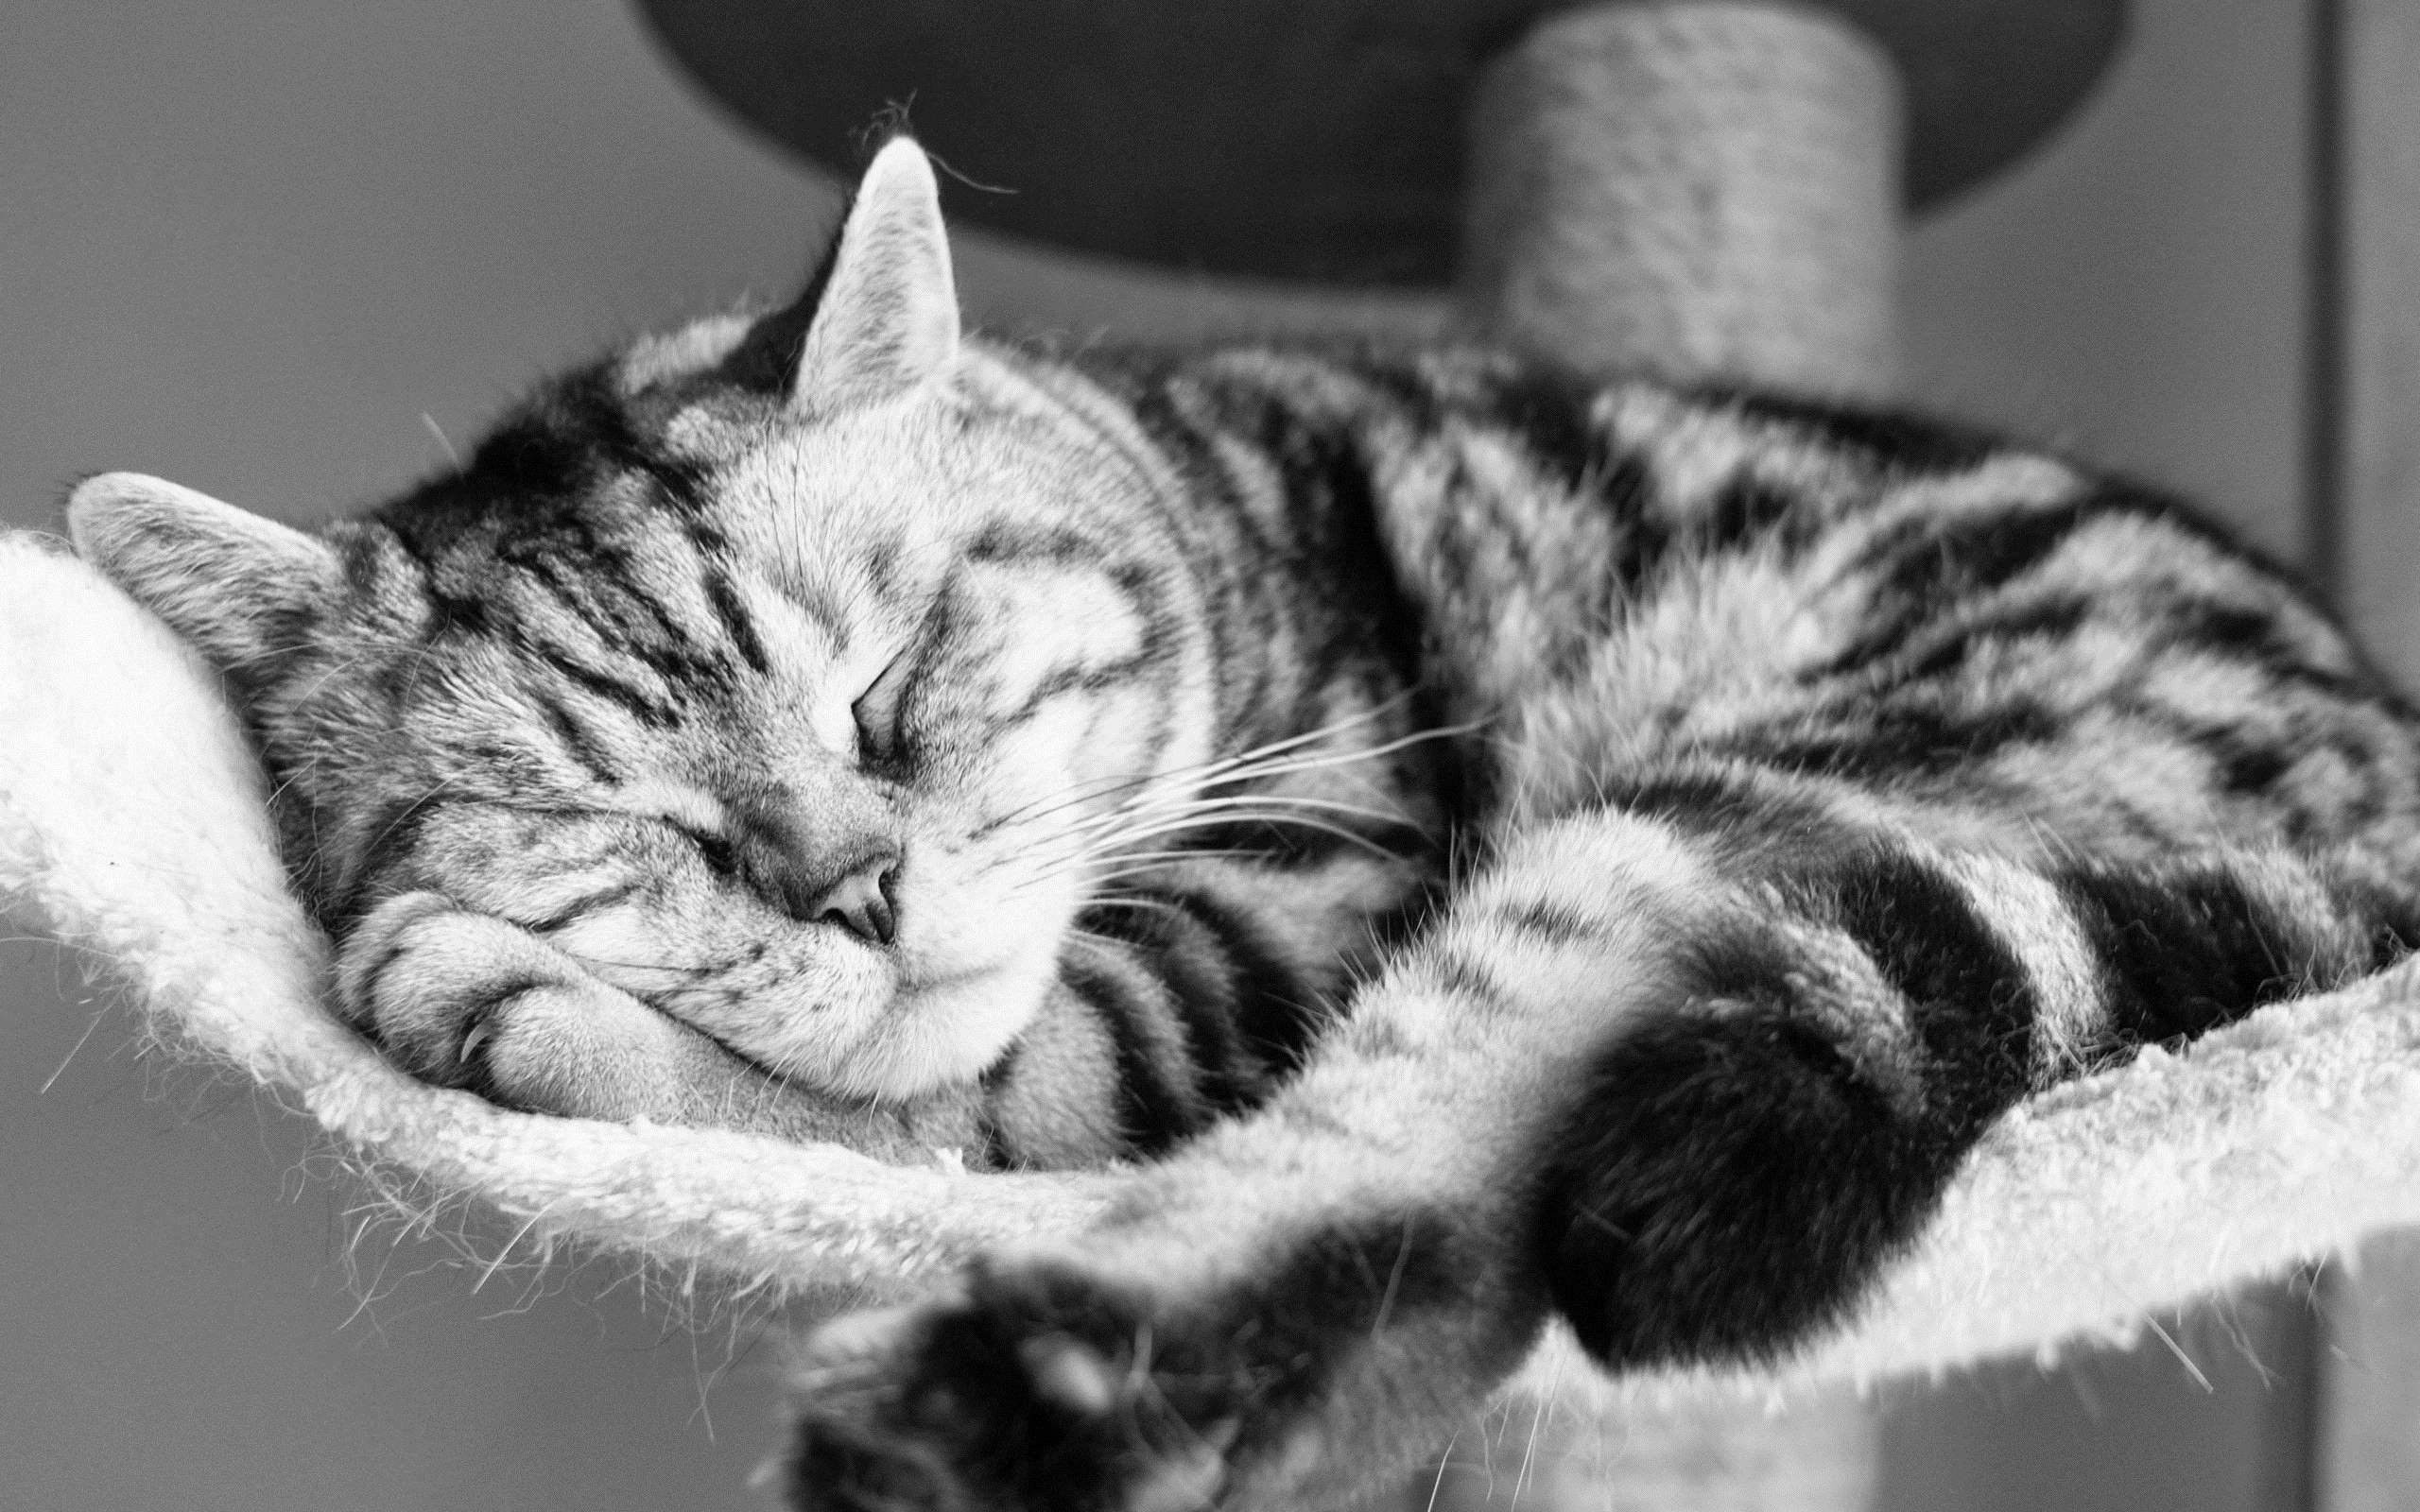 Download background animals, cat, to lie down, lie, striped, bw, chb, sleep, dream